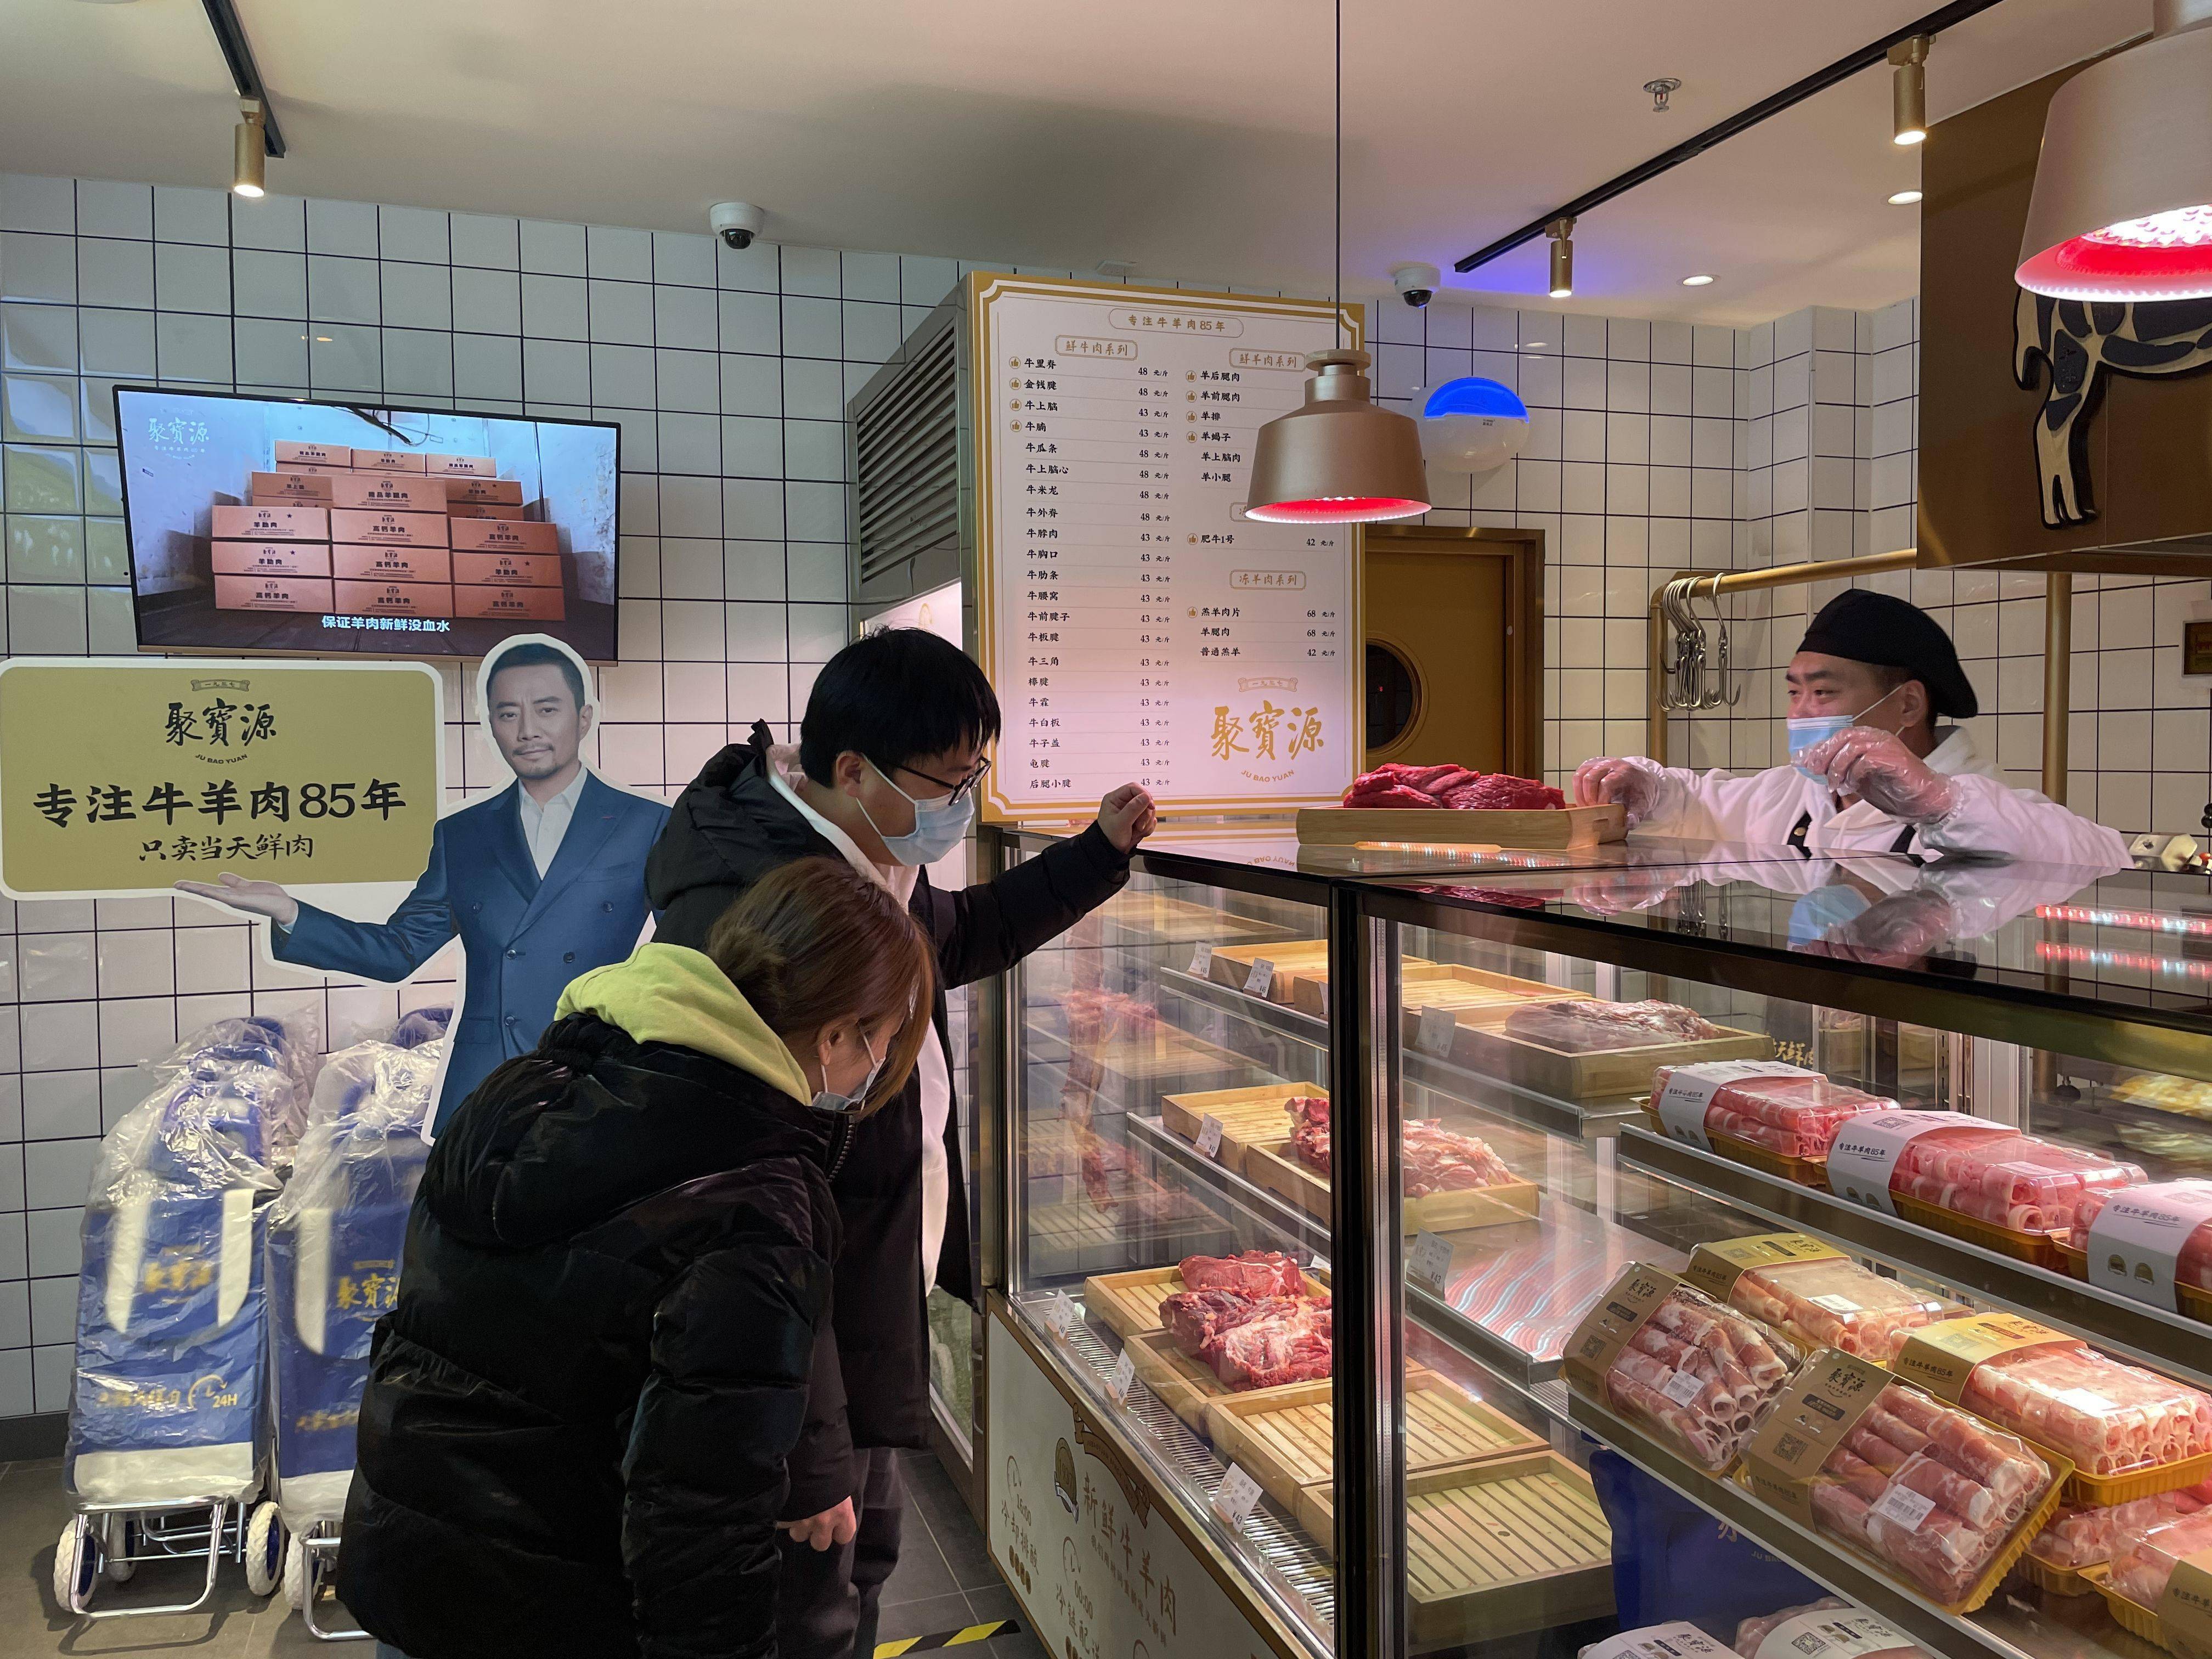 北京老式动力社区店 传统食品企业转型升级重在便捷